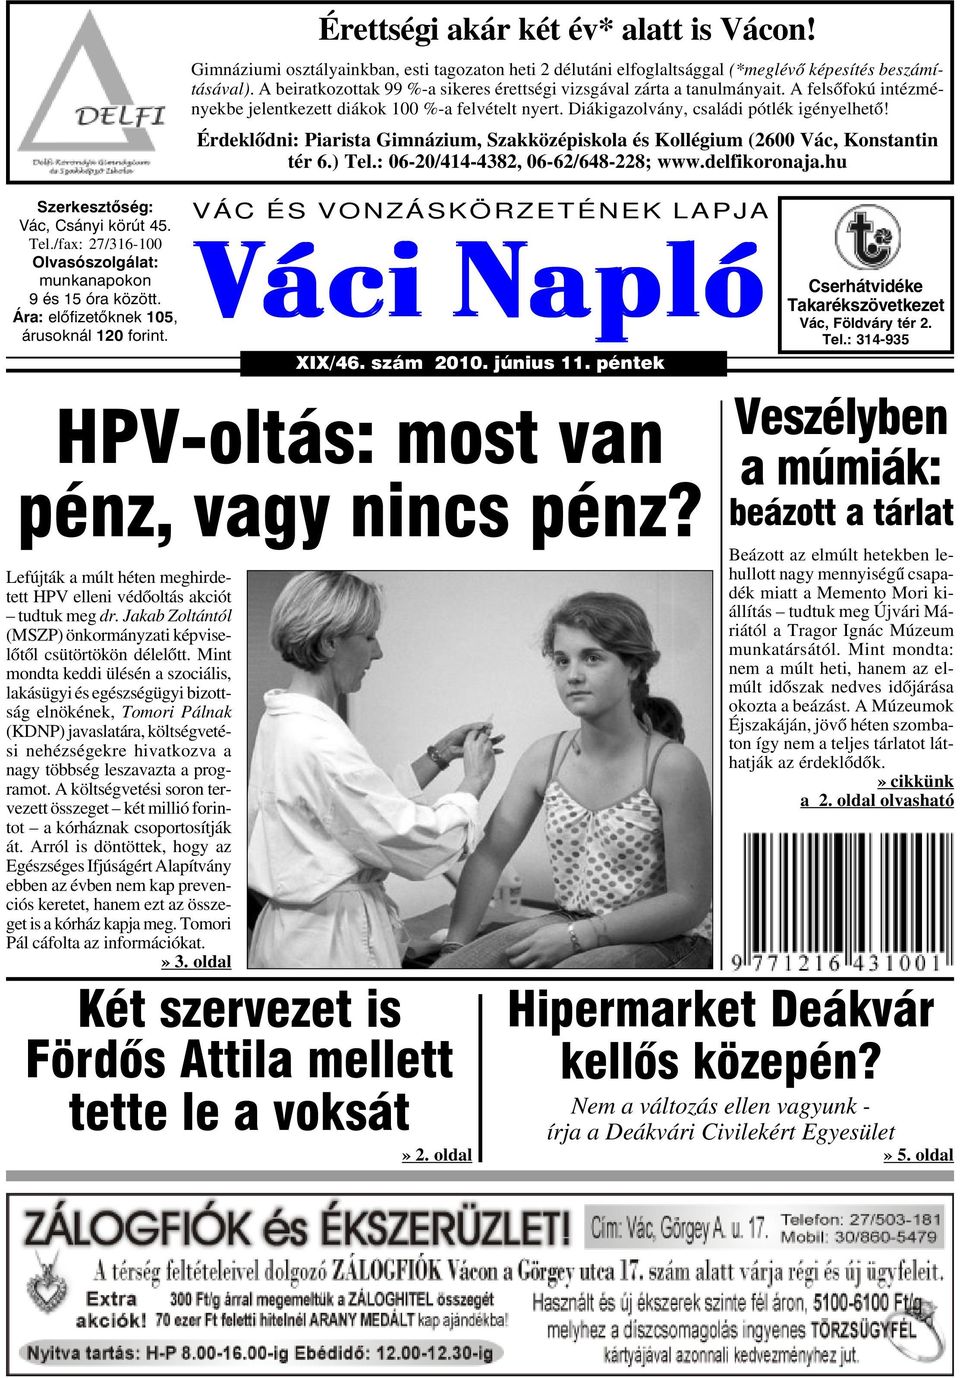 Váci Napló. HPV-oltás: most van pénz, vagy nincs pénz? Két szervezet is  Fördõs Attila mellett tette le a voksát» 2. oldal. Veszélyben a múmiák: -  PDF Free Download